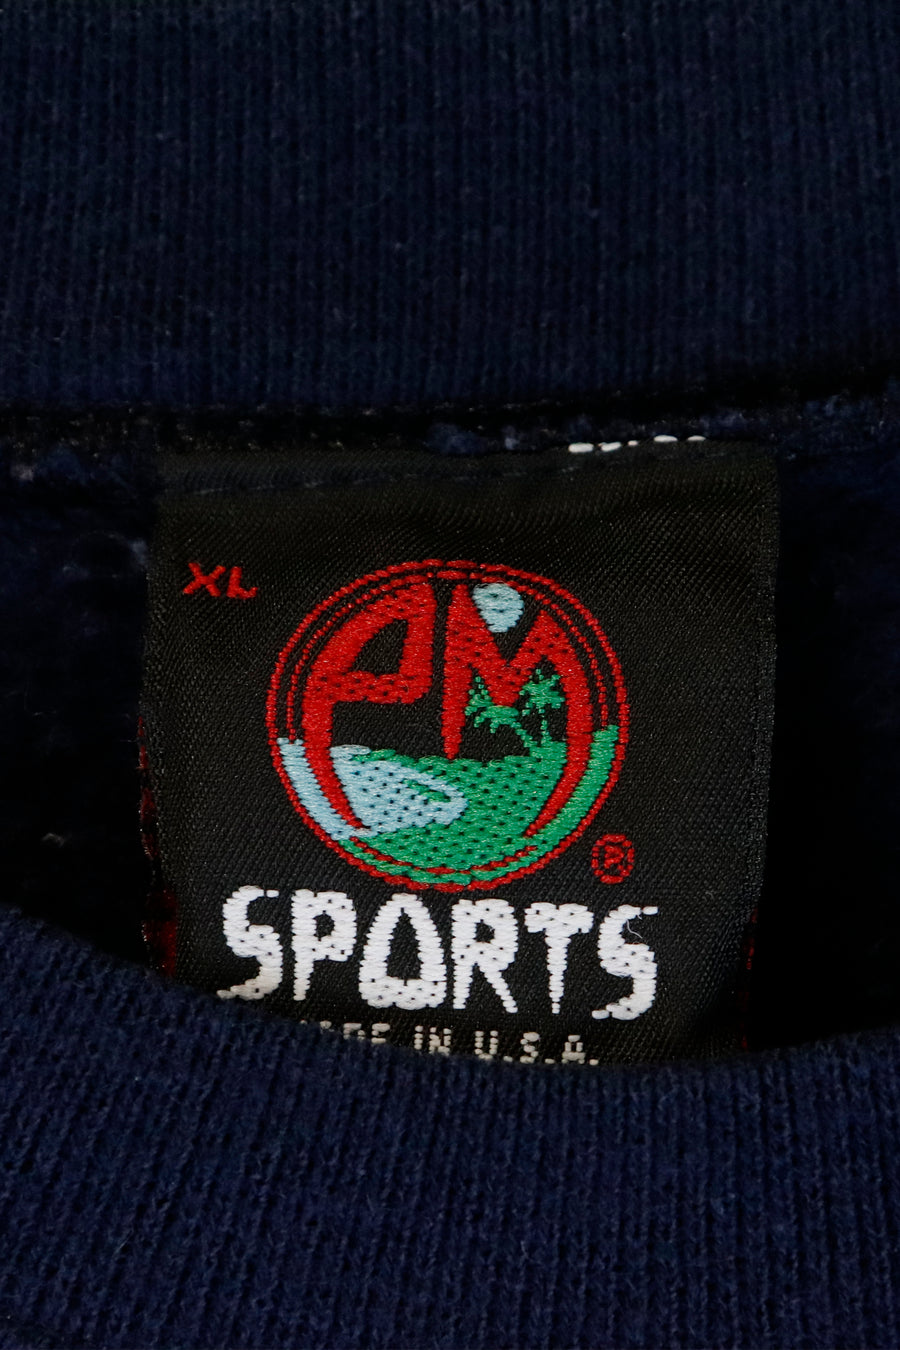 Vintage Ganisus Gollege Sweatshirt Sz XL